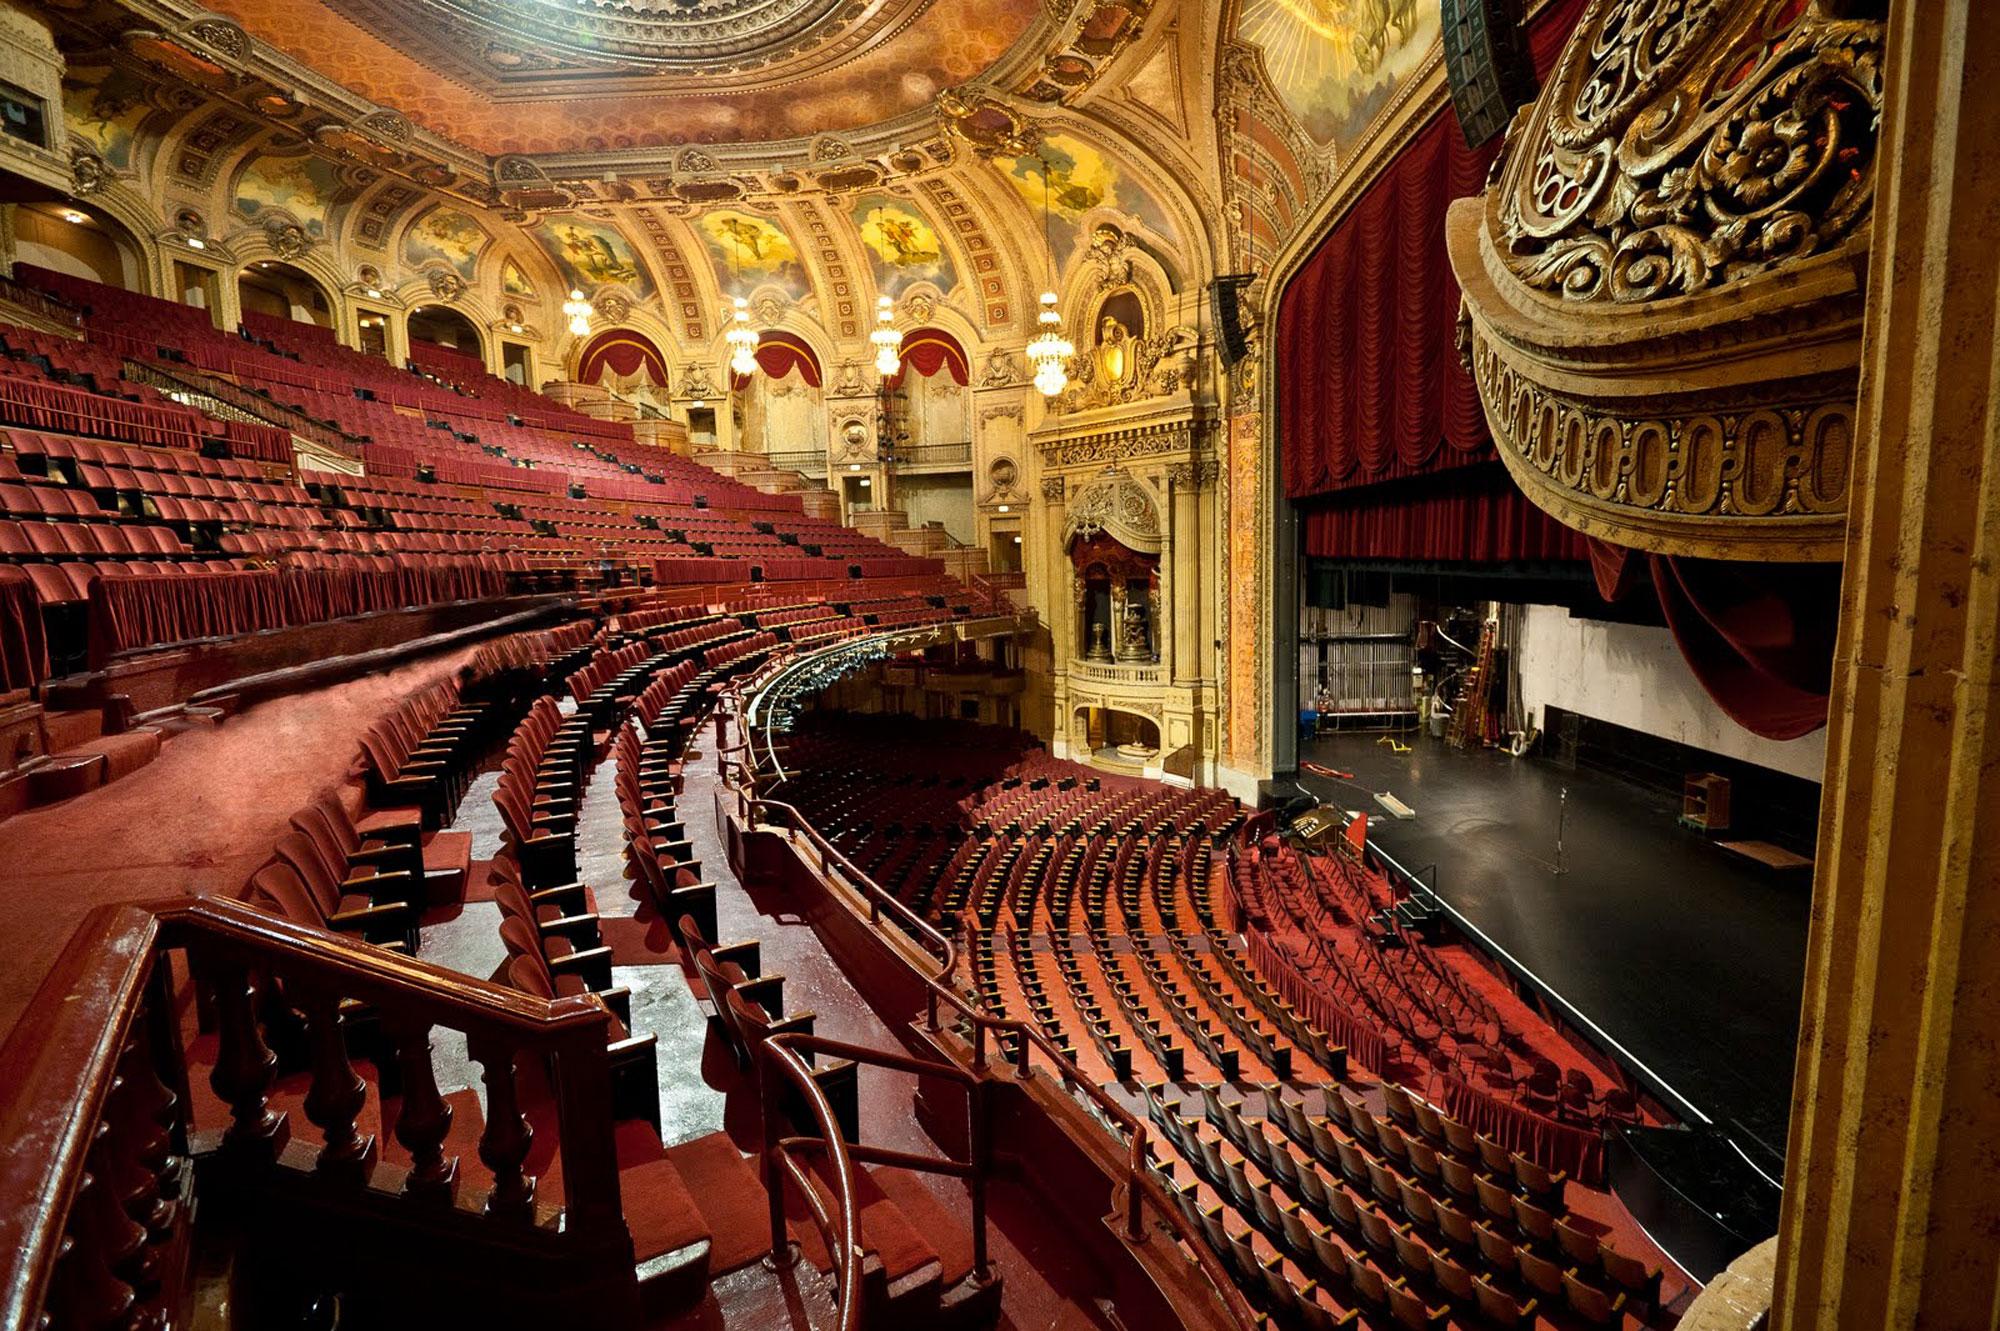 Life is theater. Оперный театр в Чикаго. Театр Лондейл в Чикаго. Оперный театр Чикаго в 1921 году. Театр Чикаго внутри.